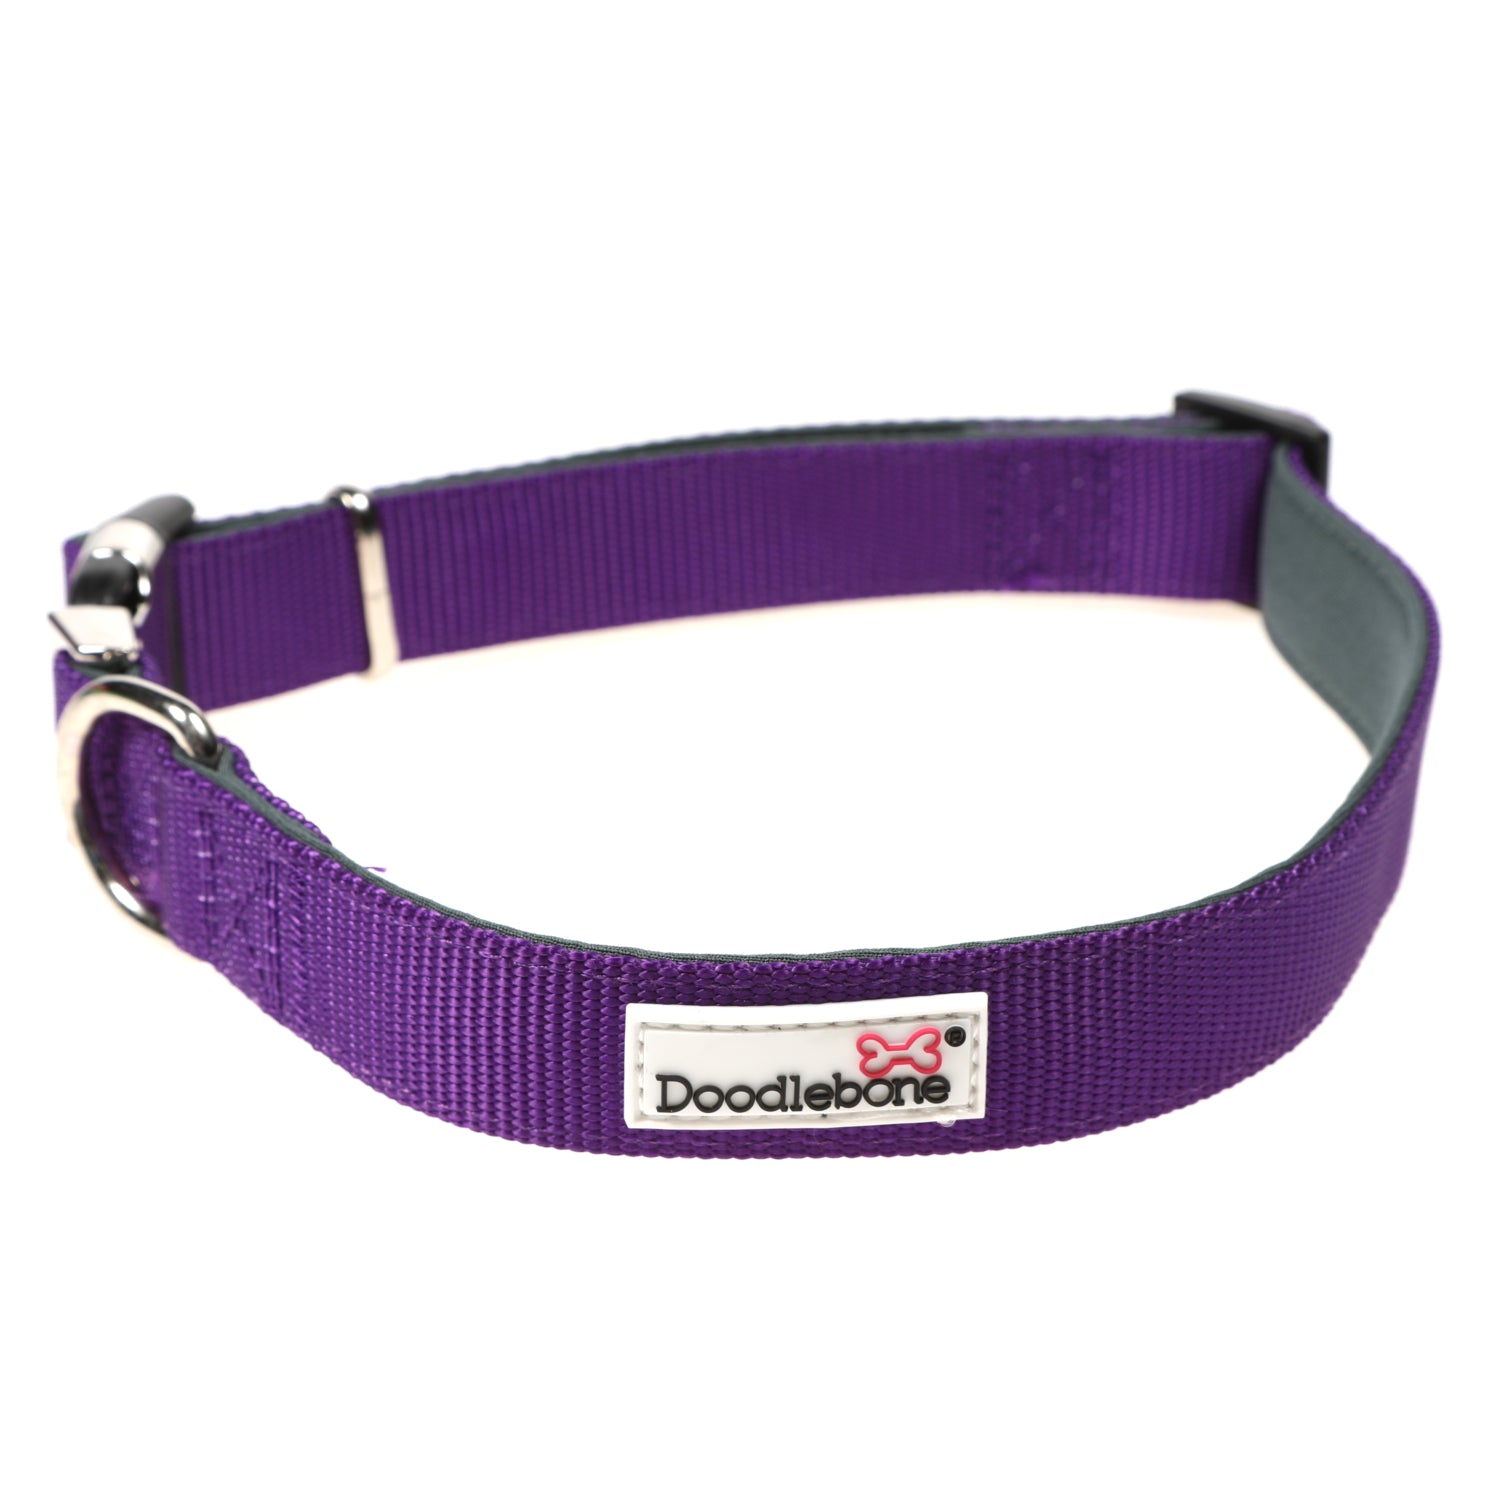 Doodlebone Originals Padded Dog Collar Violet 3 Sizes